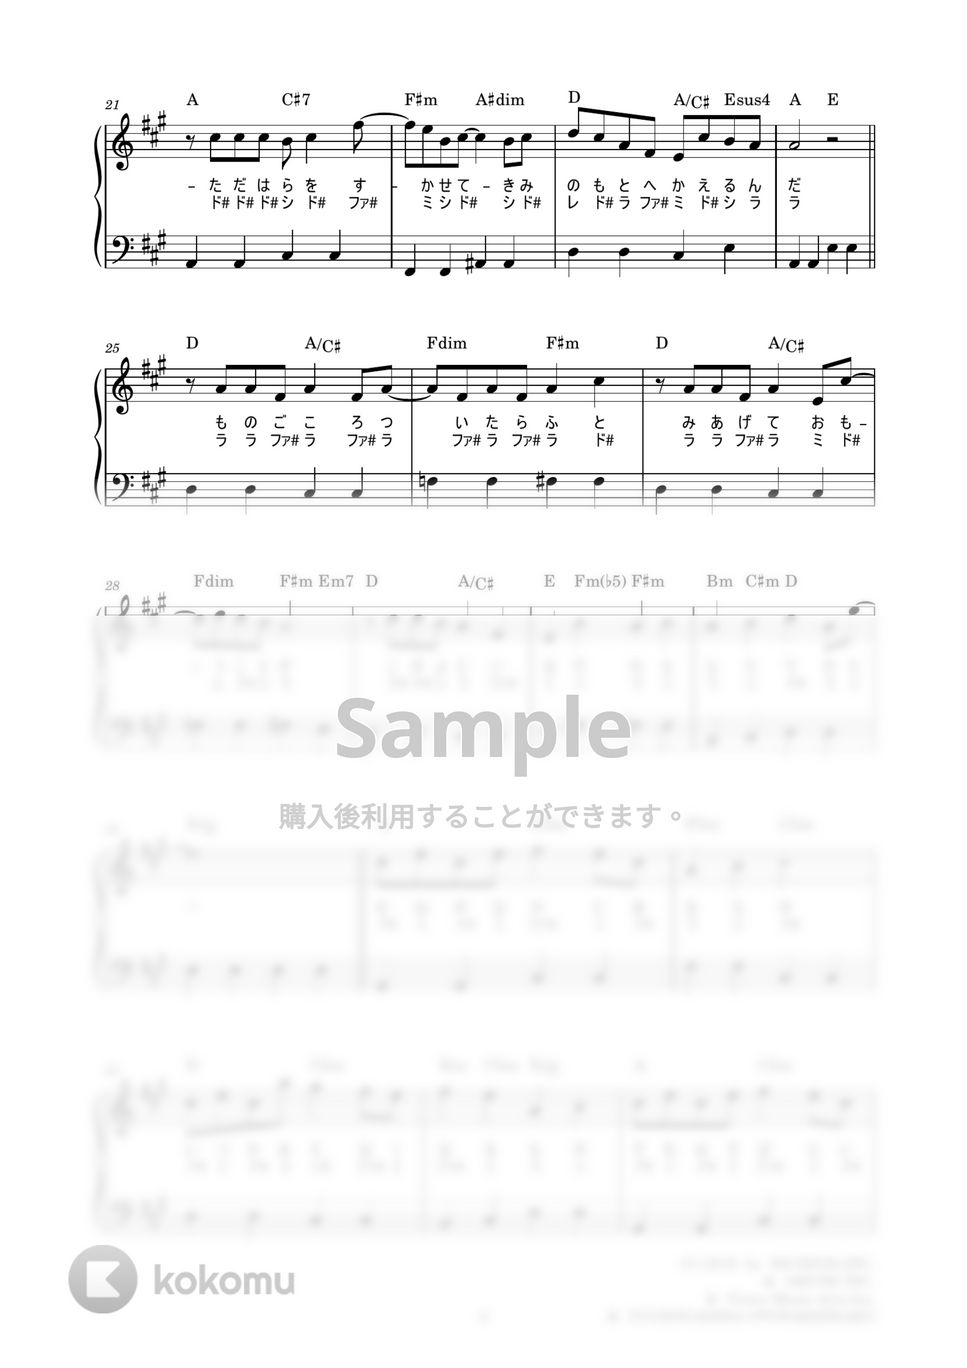 星野源 - 恋 (かんたん 歌詞付き ドレミ付き 初心者) by piano.tokyo